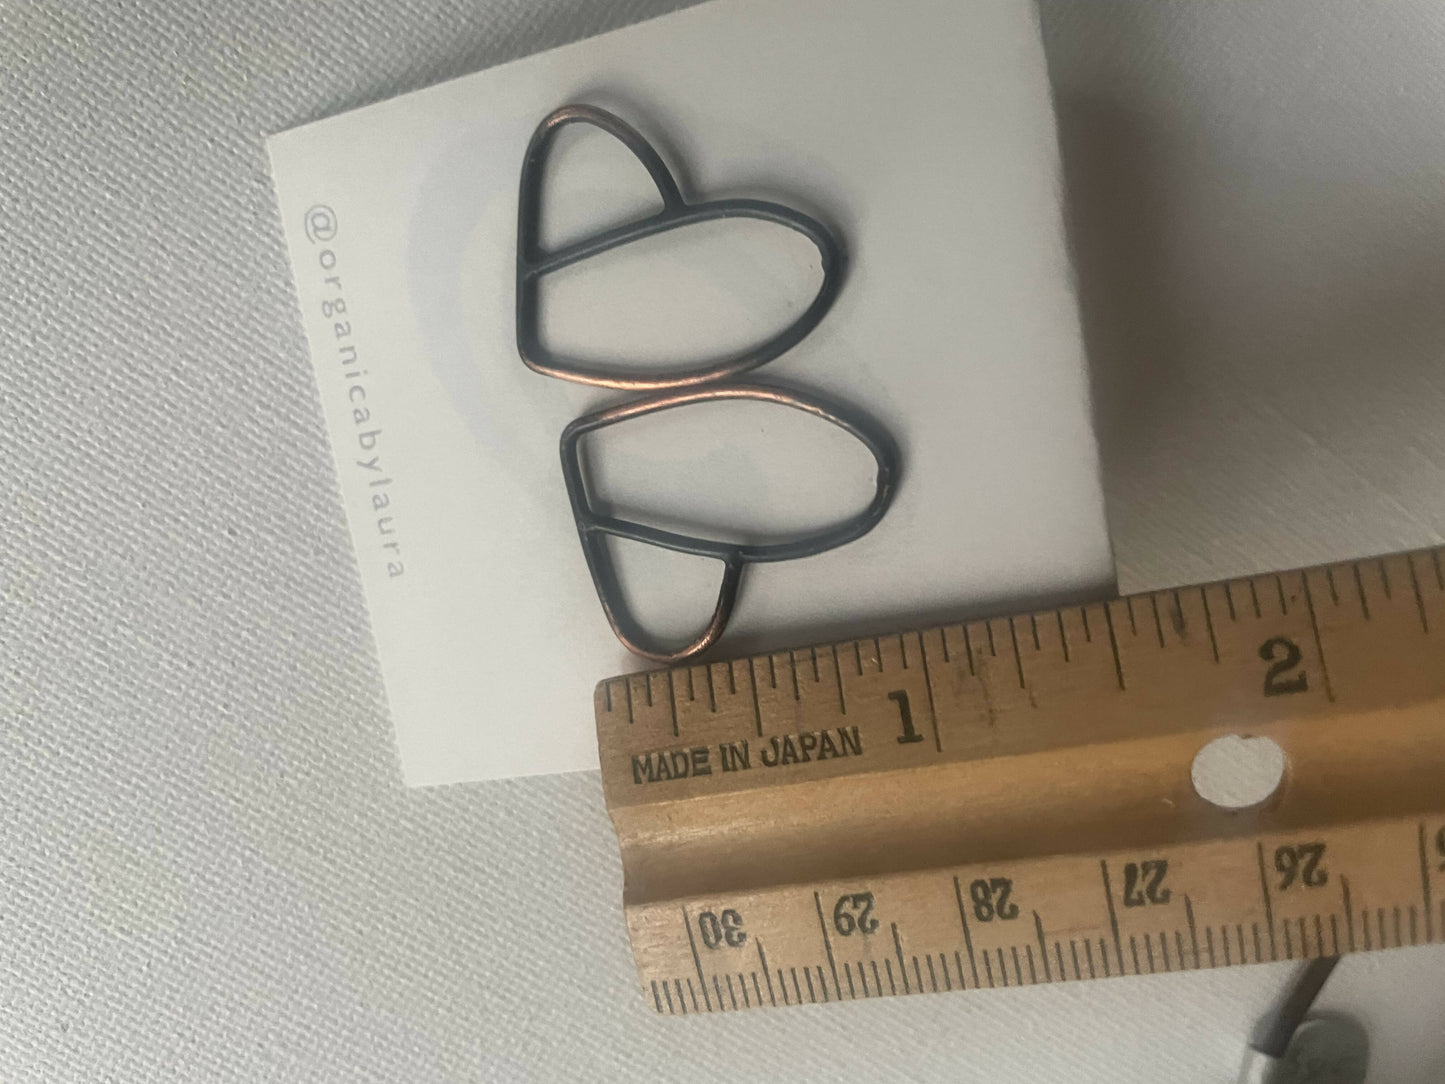 Copper heart earrings